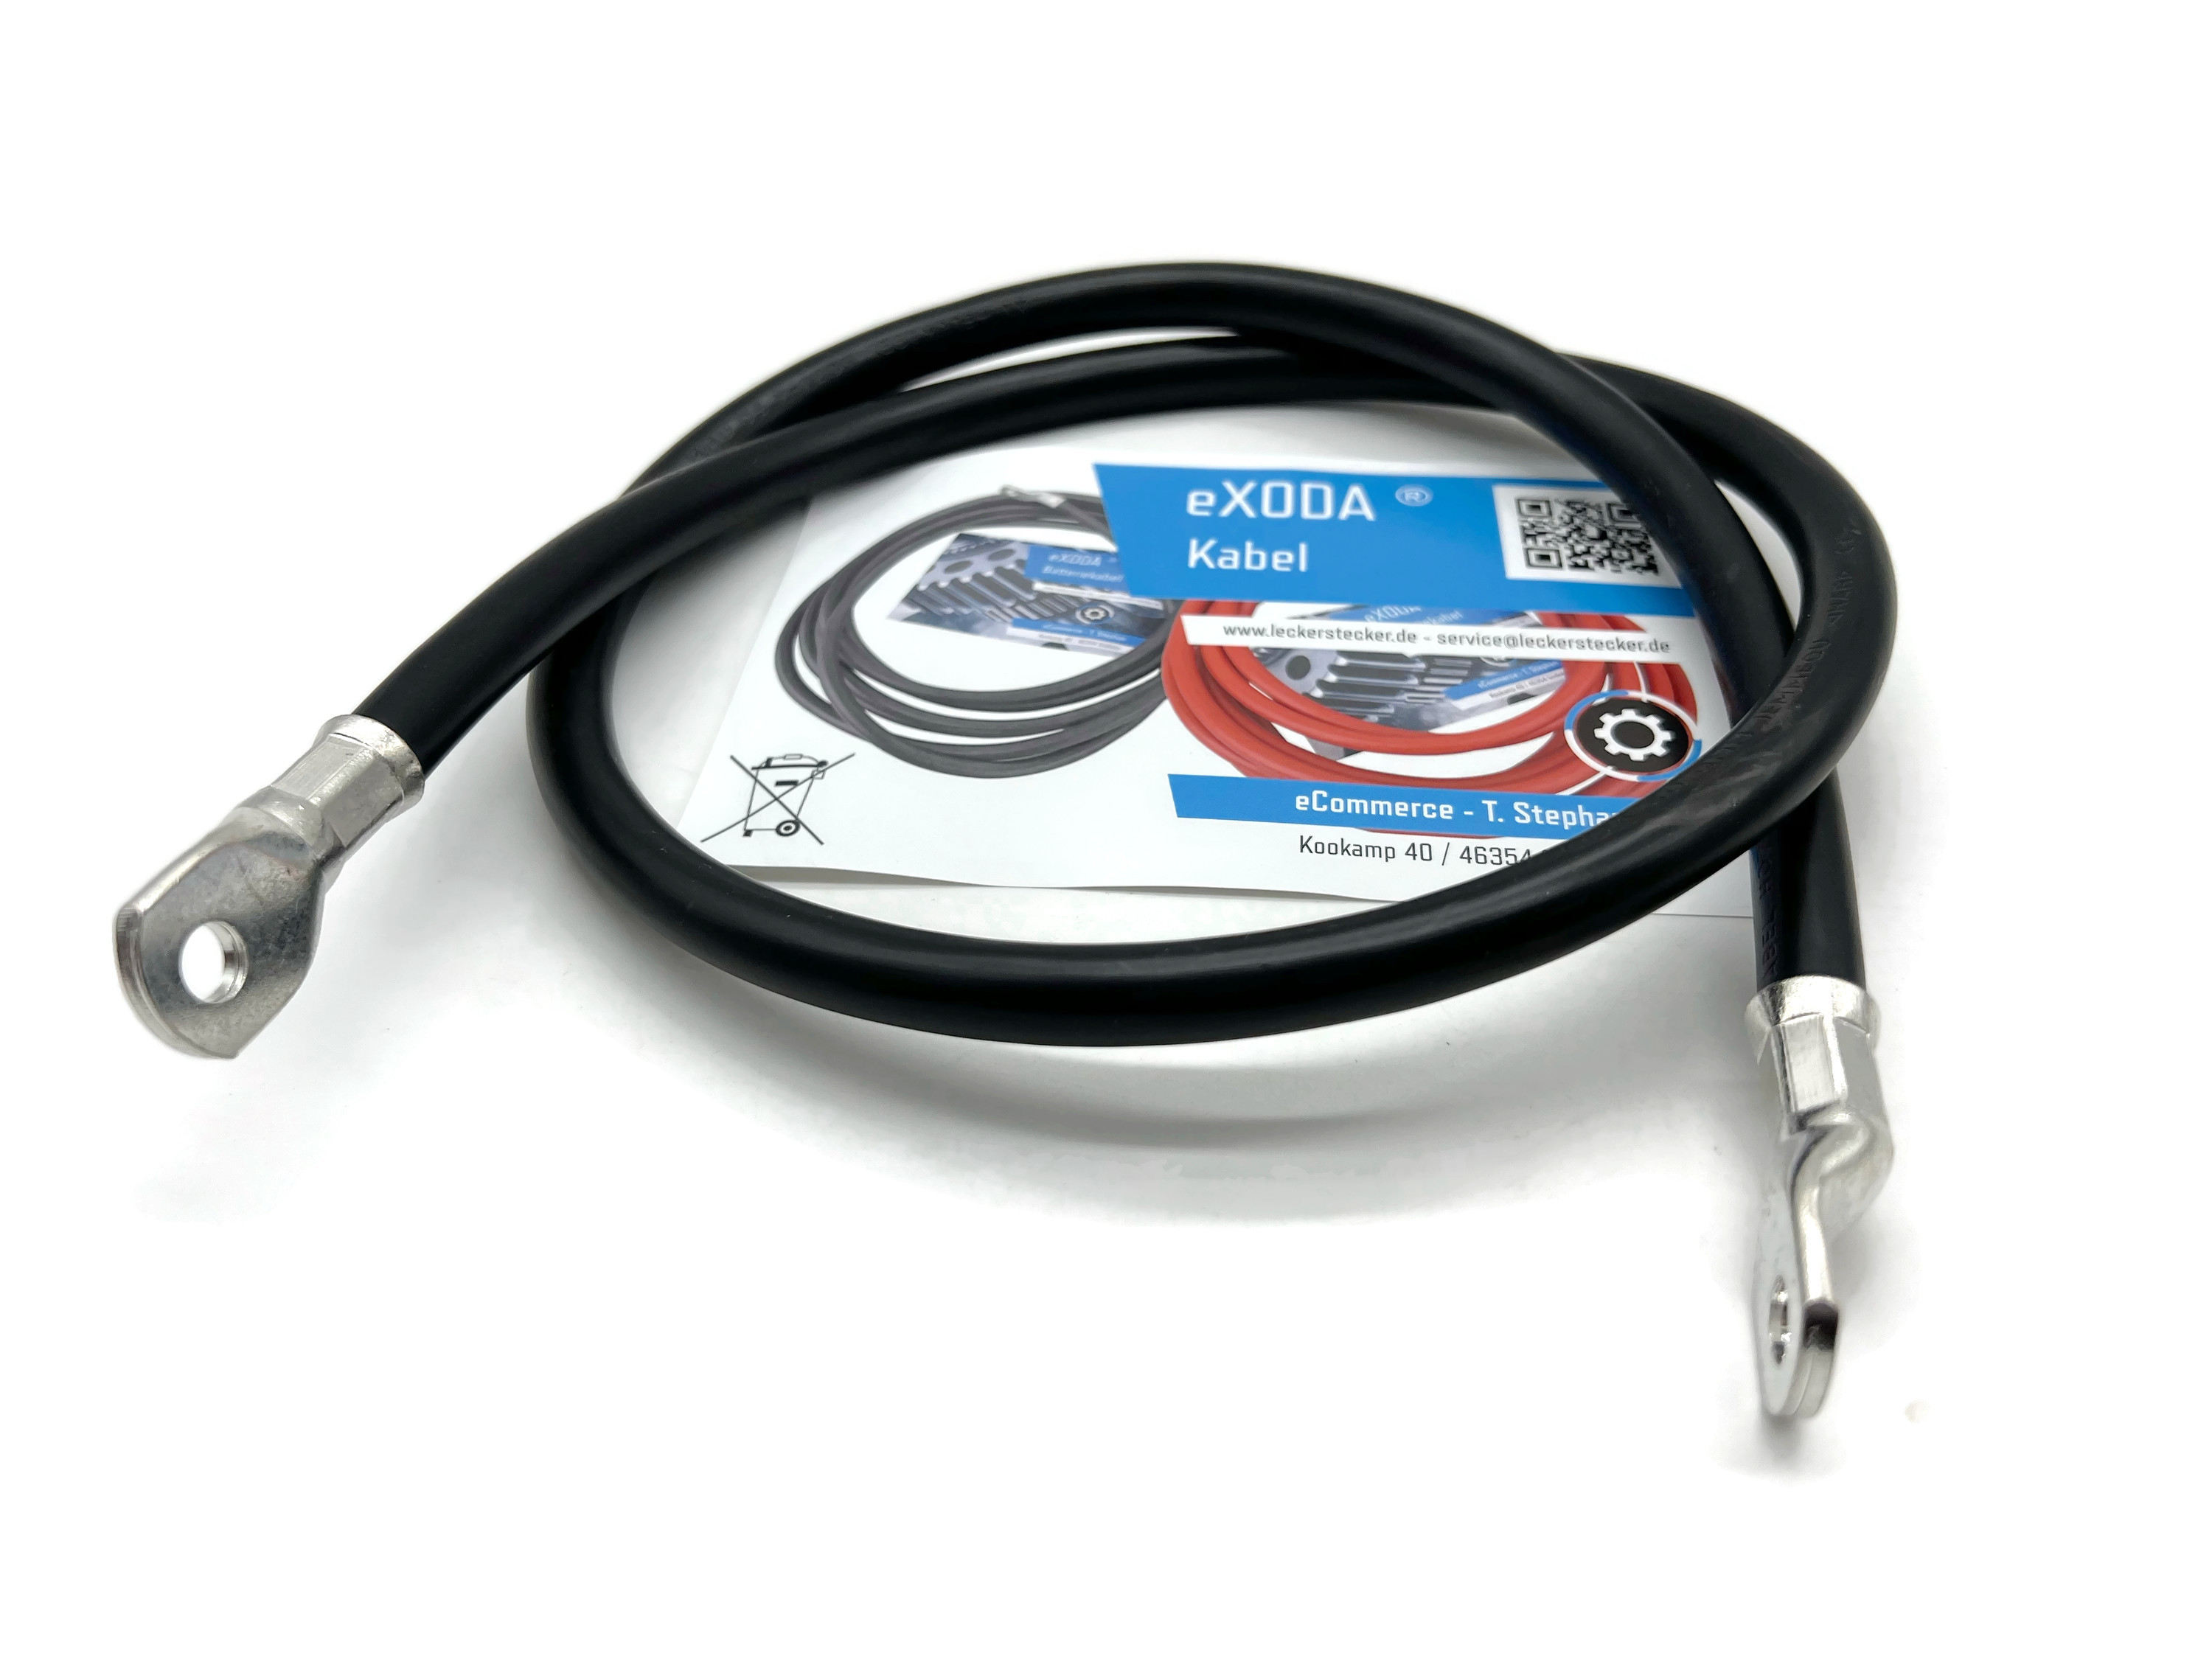 SIGA IMPULSIVE DYNAMIK Batteriekabel 50mm2 Schwarz 25 cm lang Kabel inkl. 2  x Polklemmen 100% Kupfer Verbindungskabel für mehrere Batterien :  : Auto & Motorrad